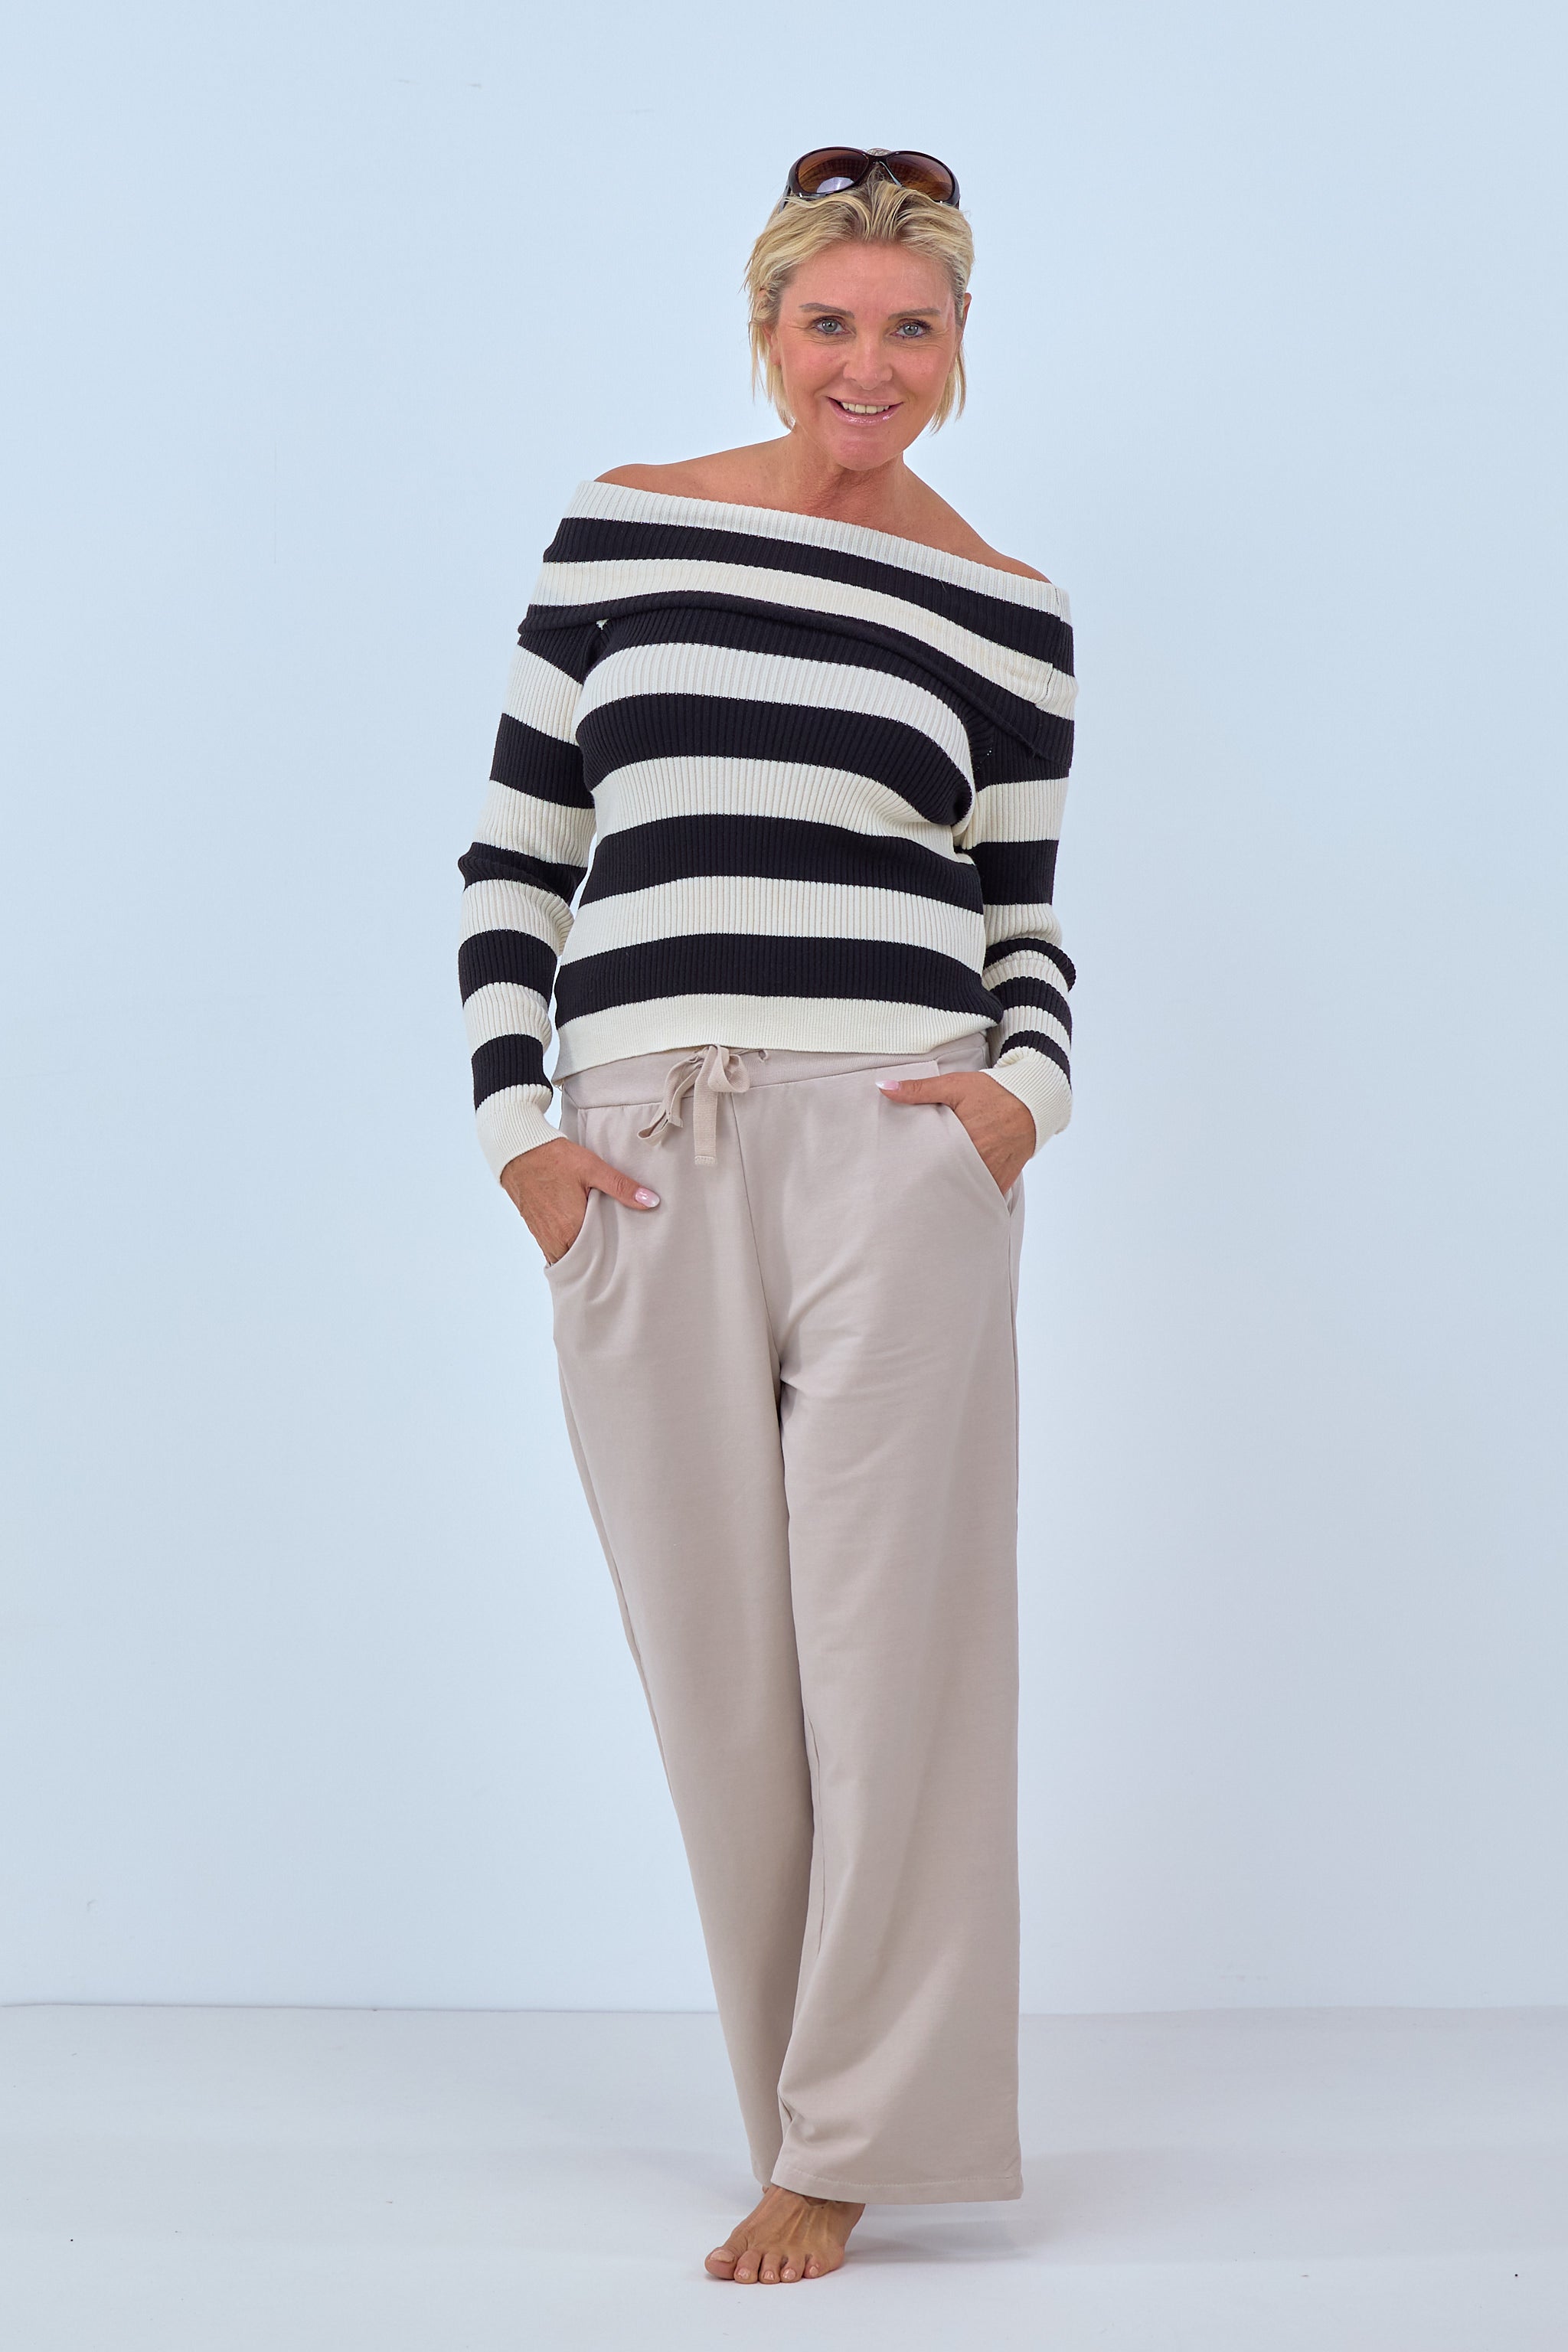 Damen Pullover schulterfrei Streifen schwarz weiß von Trends & Lifestyle Deutschland GmbH